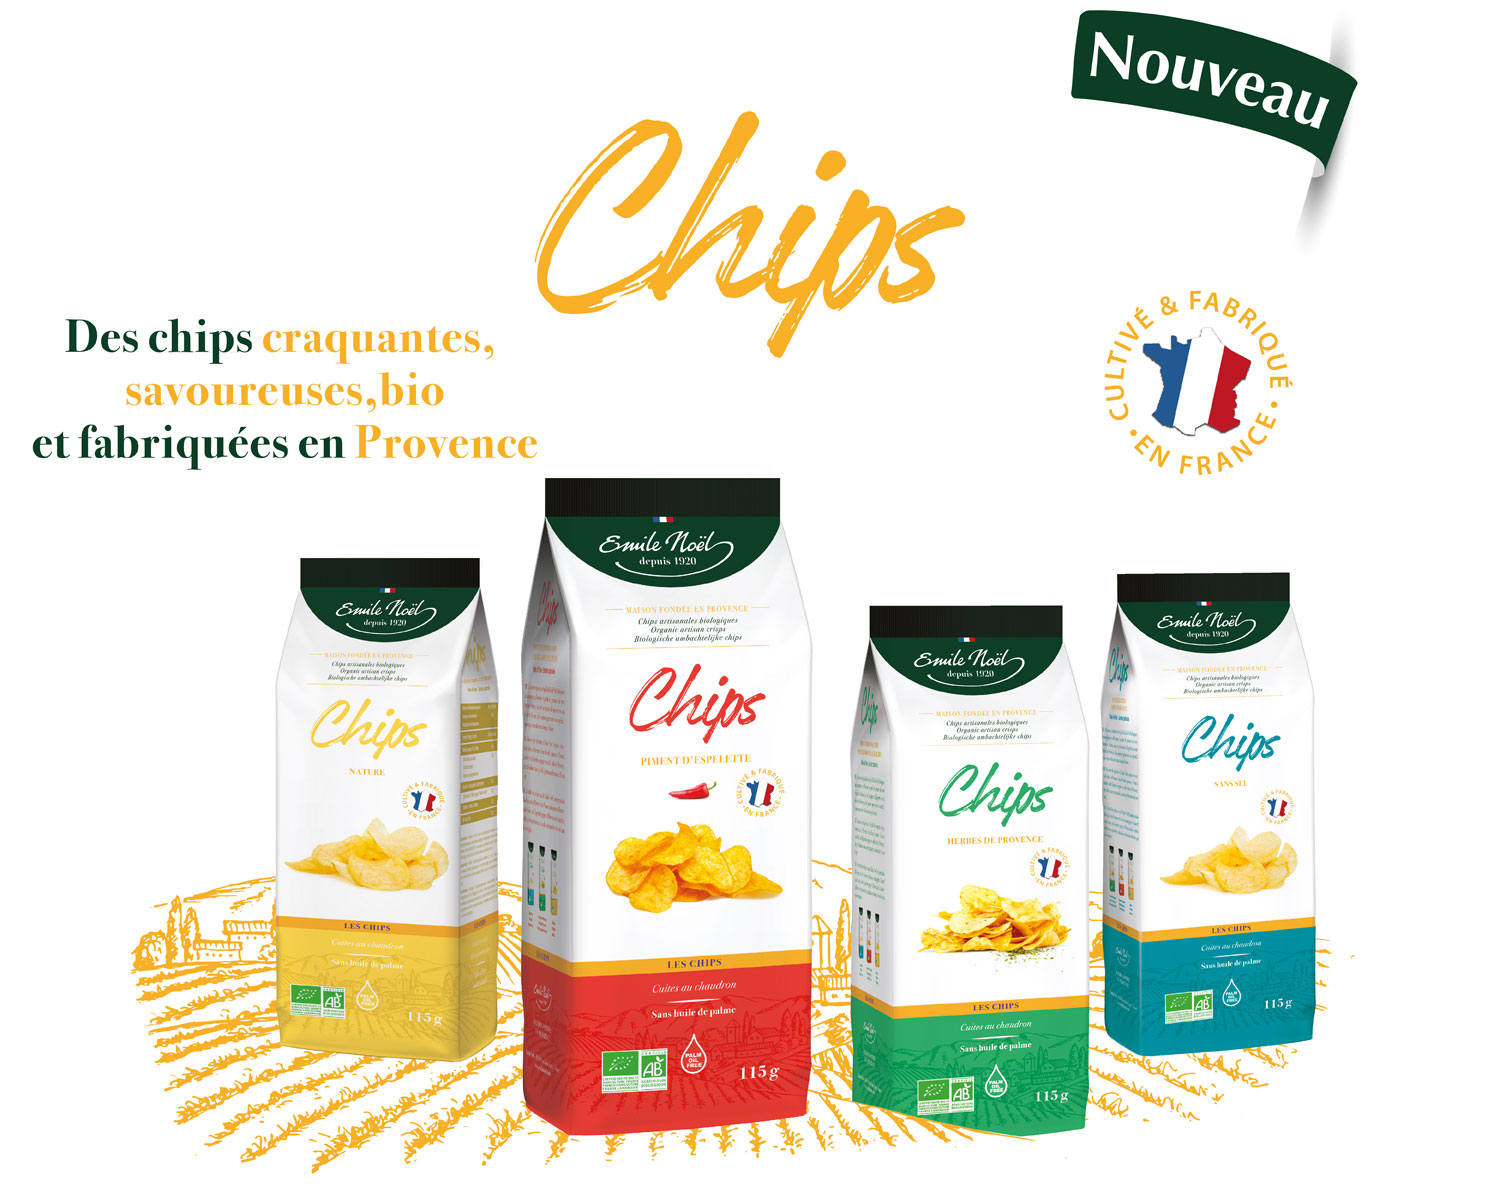 Actualité Emile Noël Chips Bio